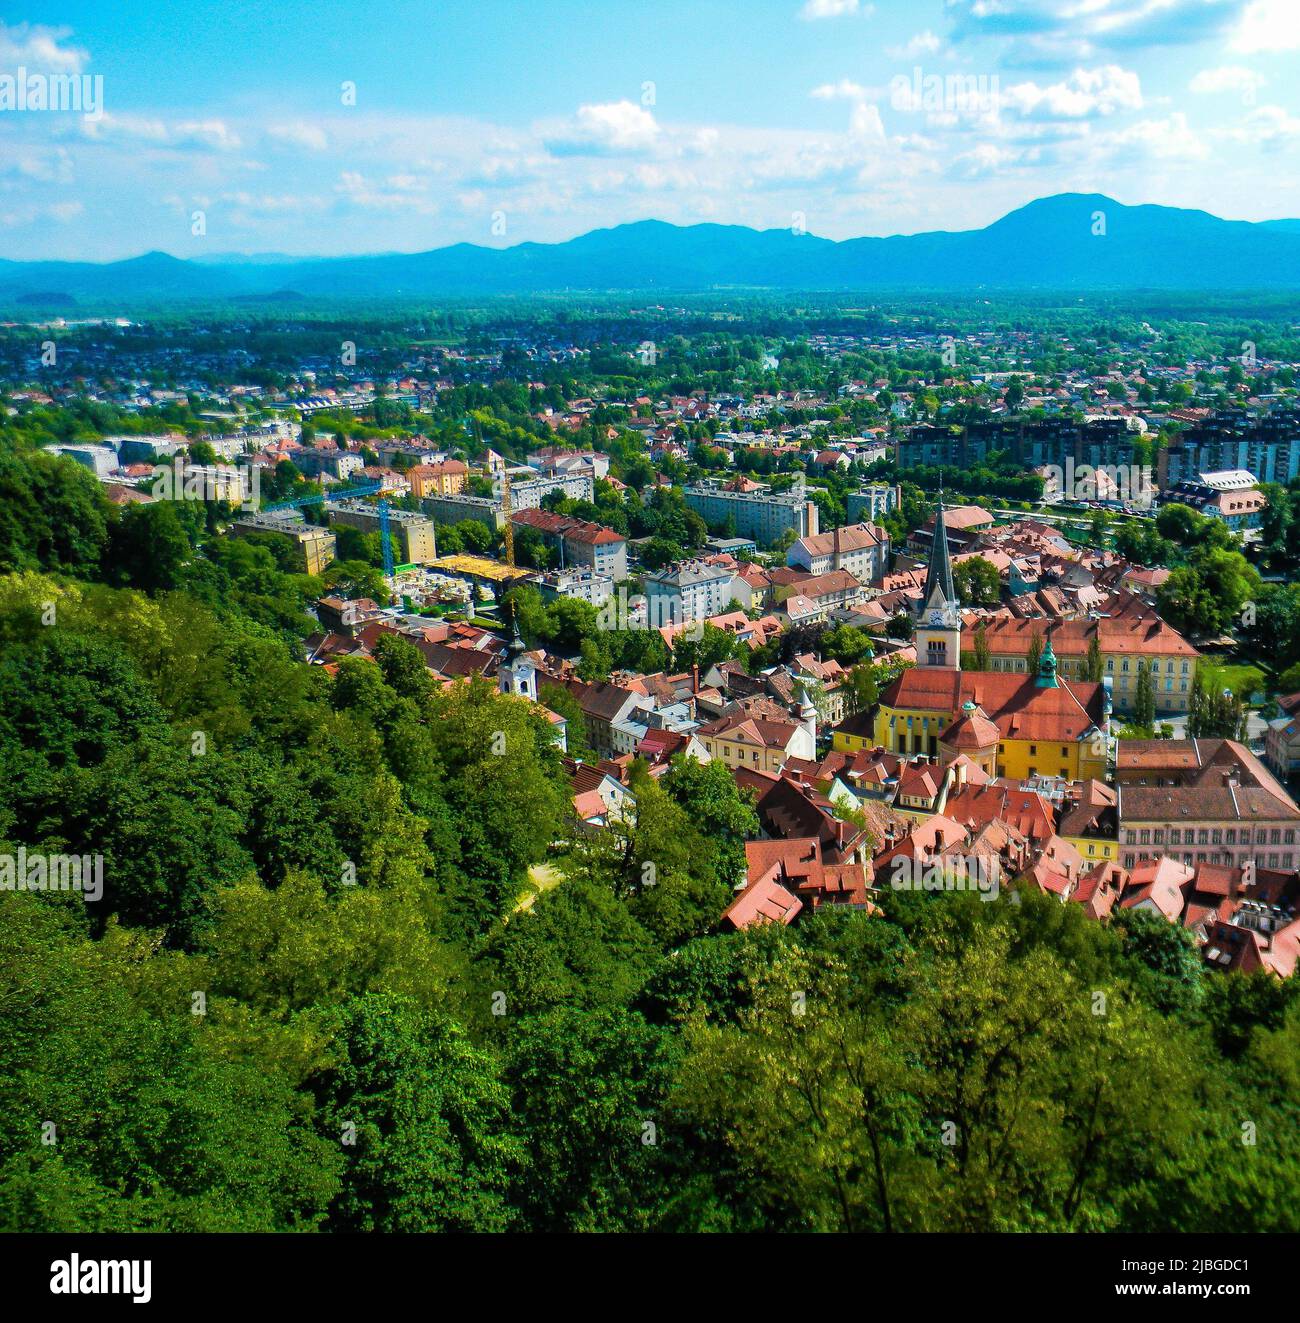 The image of cityscape from Ljubljanski grad, Ljubljana, Slovenia Stock Photo